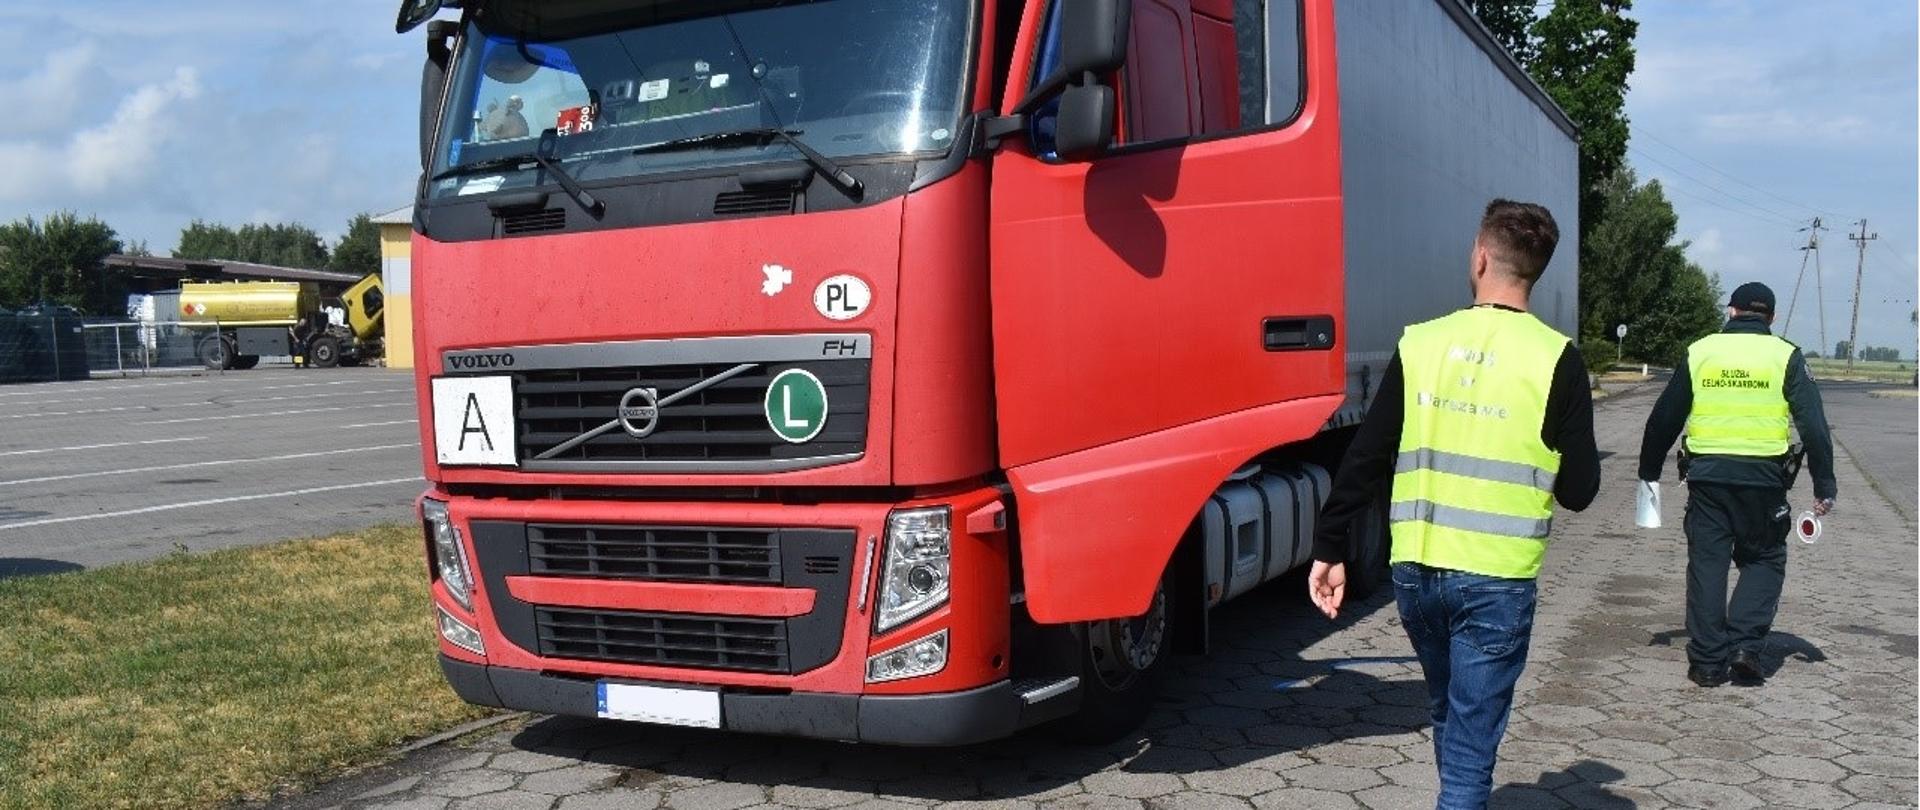 Inspektor Wojewódzkiego Inspektoratu Ochrony Środowiska w Warszawie kontroluje samochód ciężarowy.